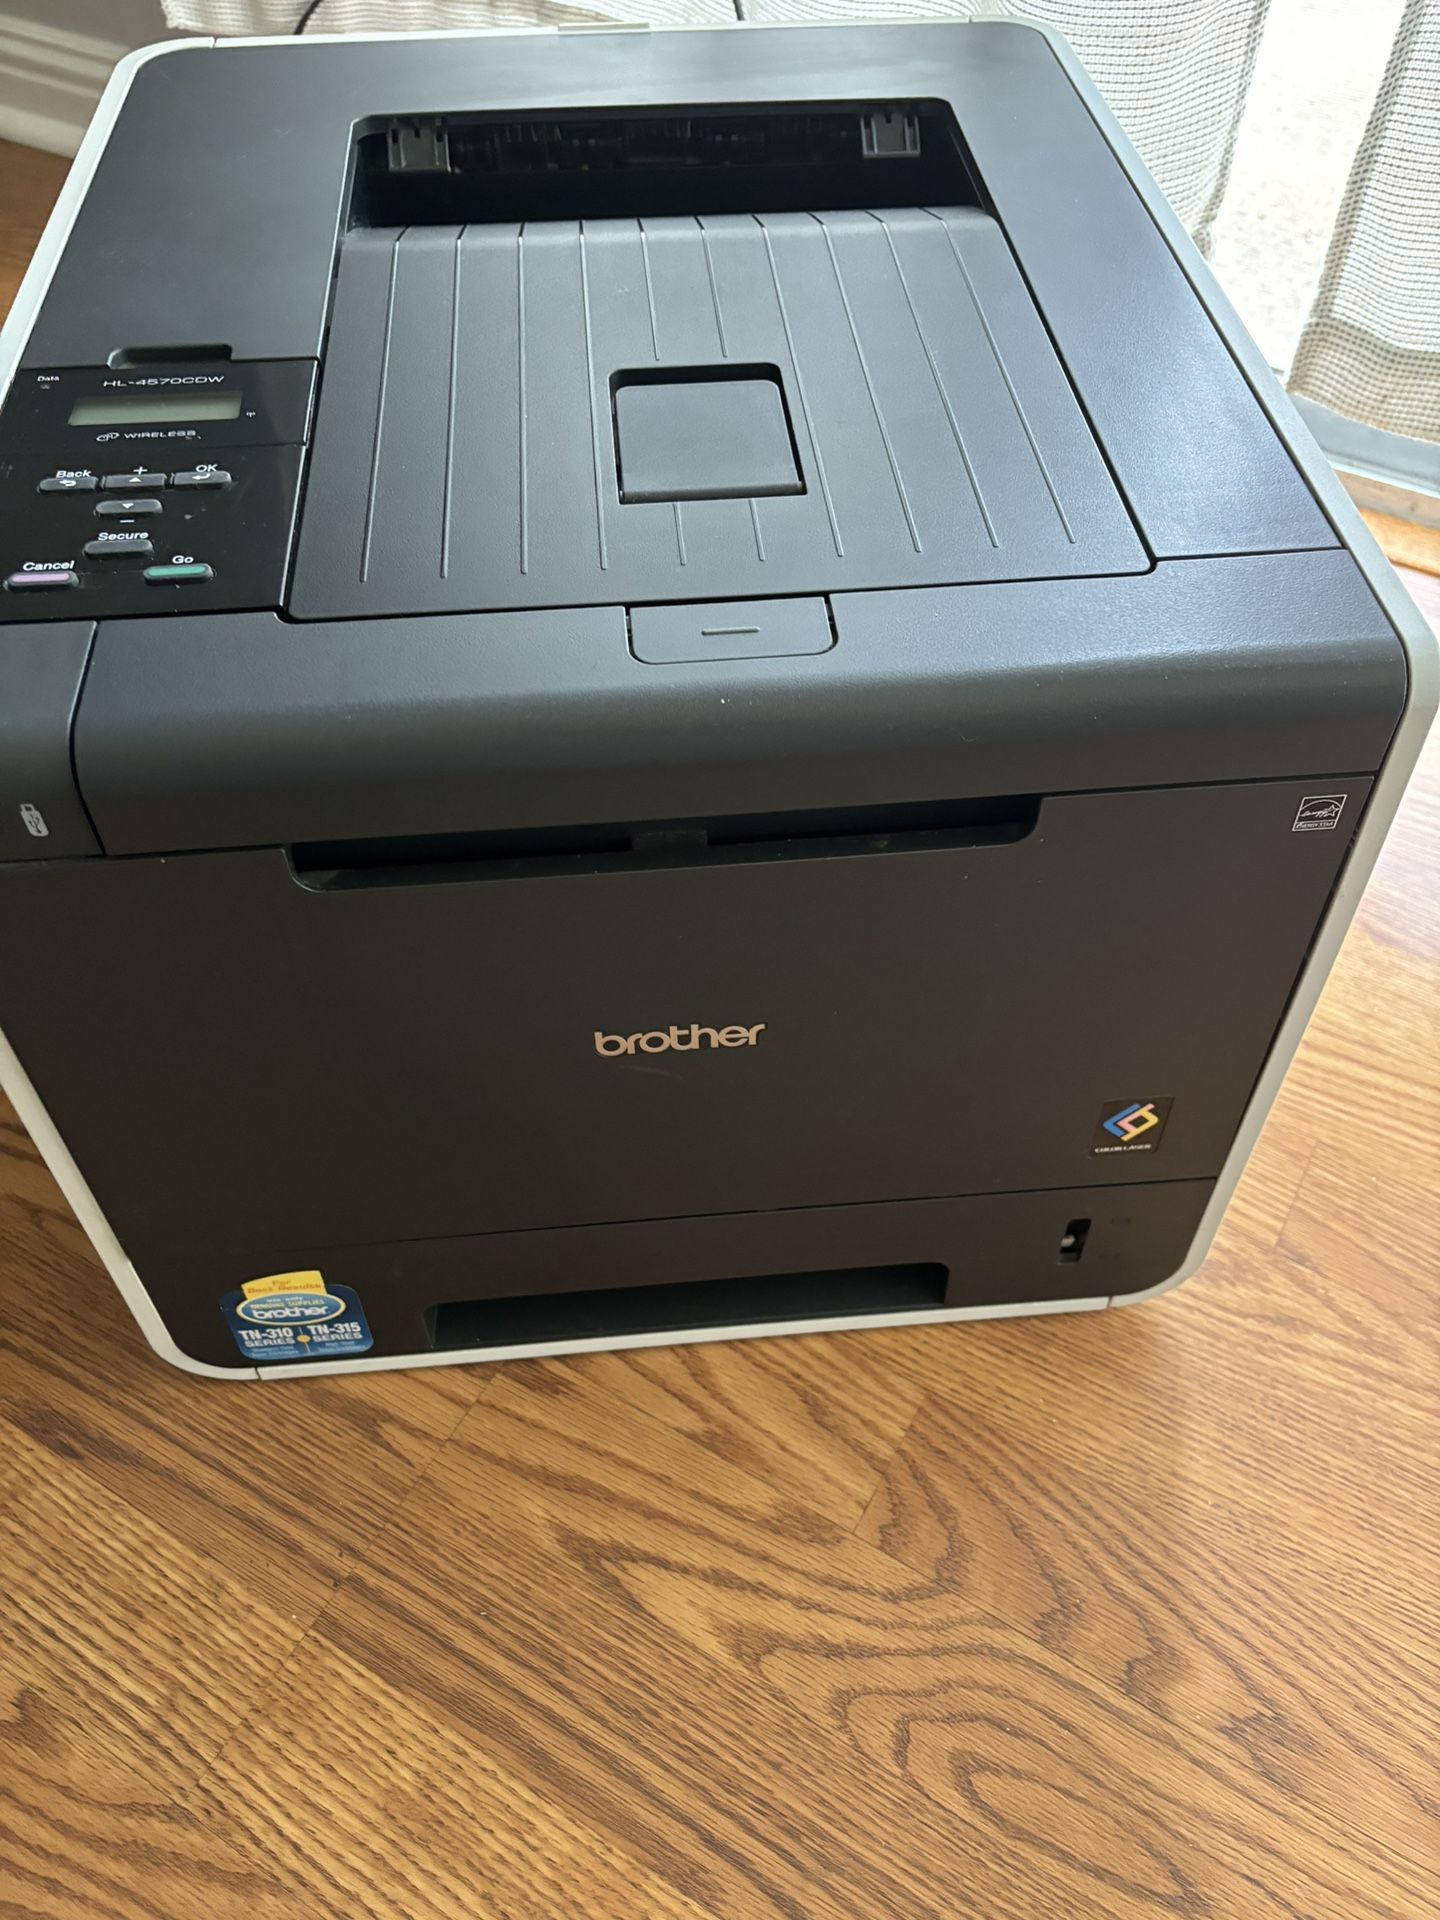   Brother HL4570CDW Laser Printer 